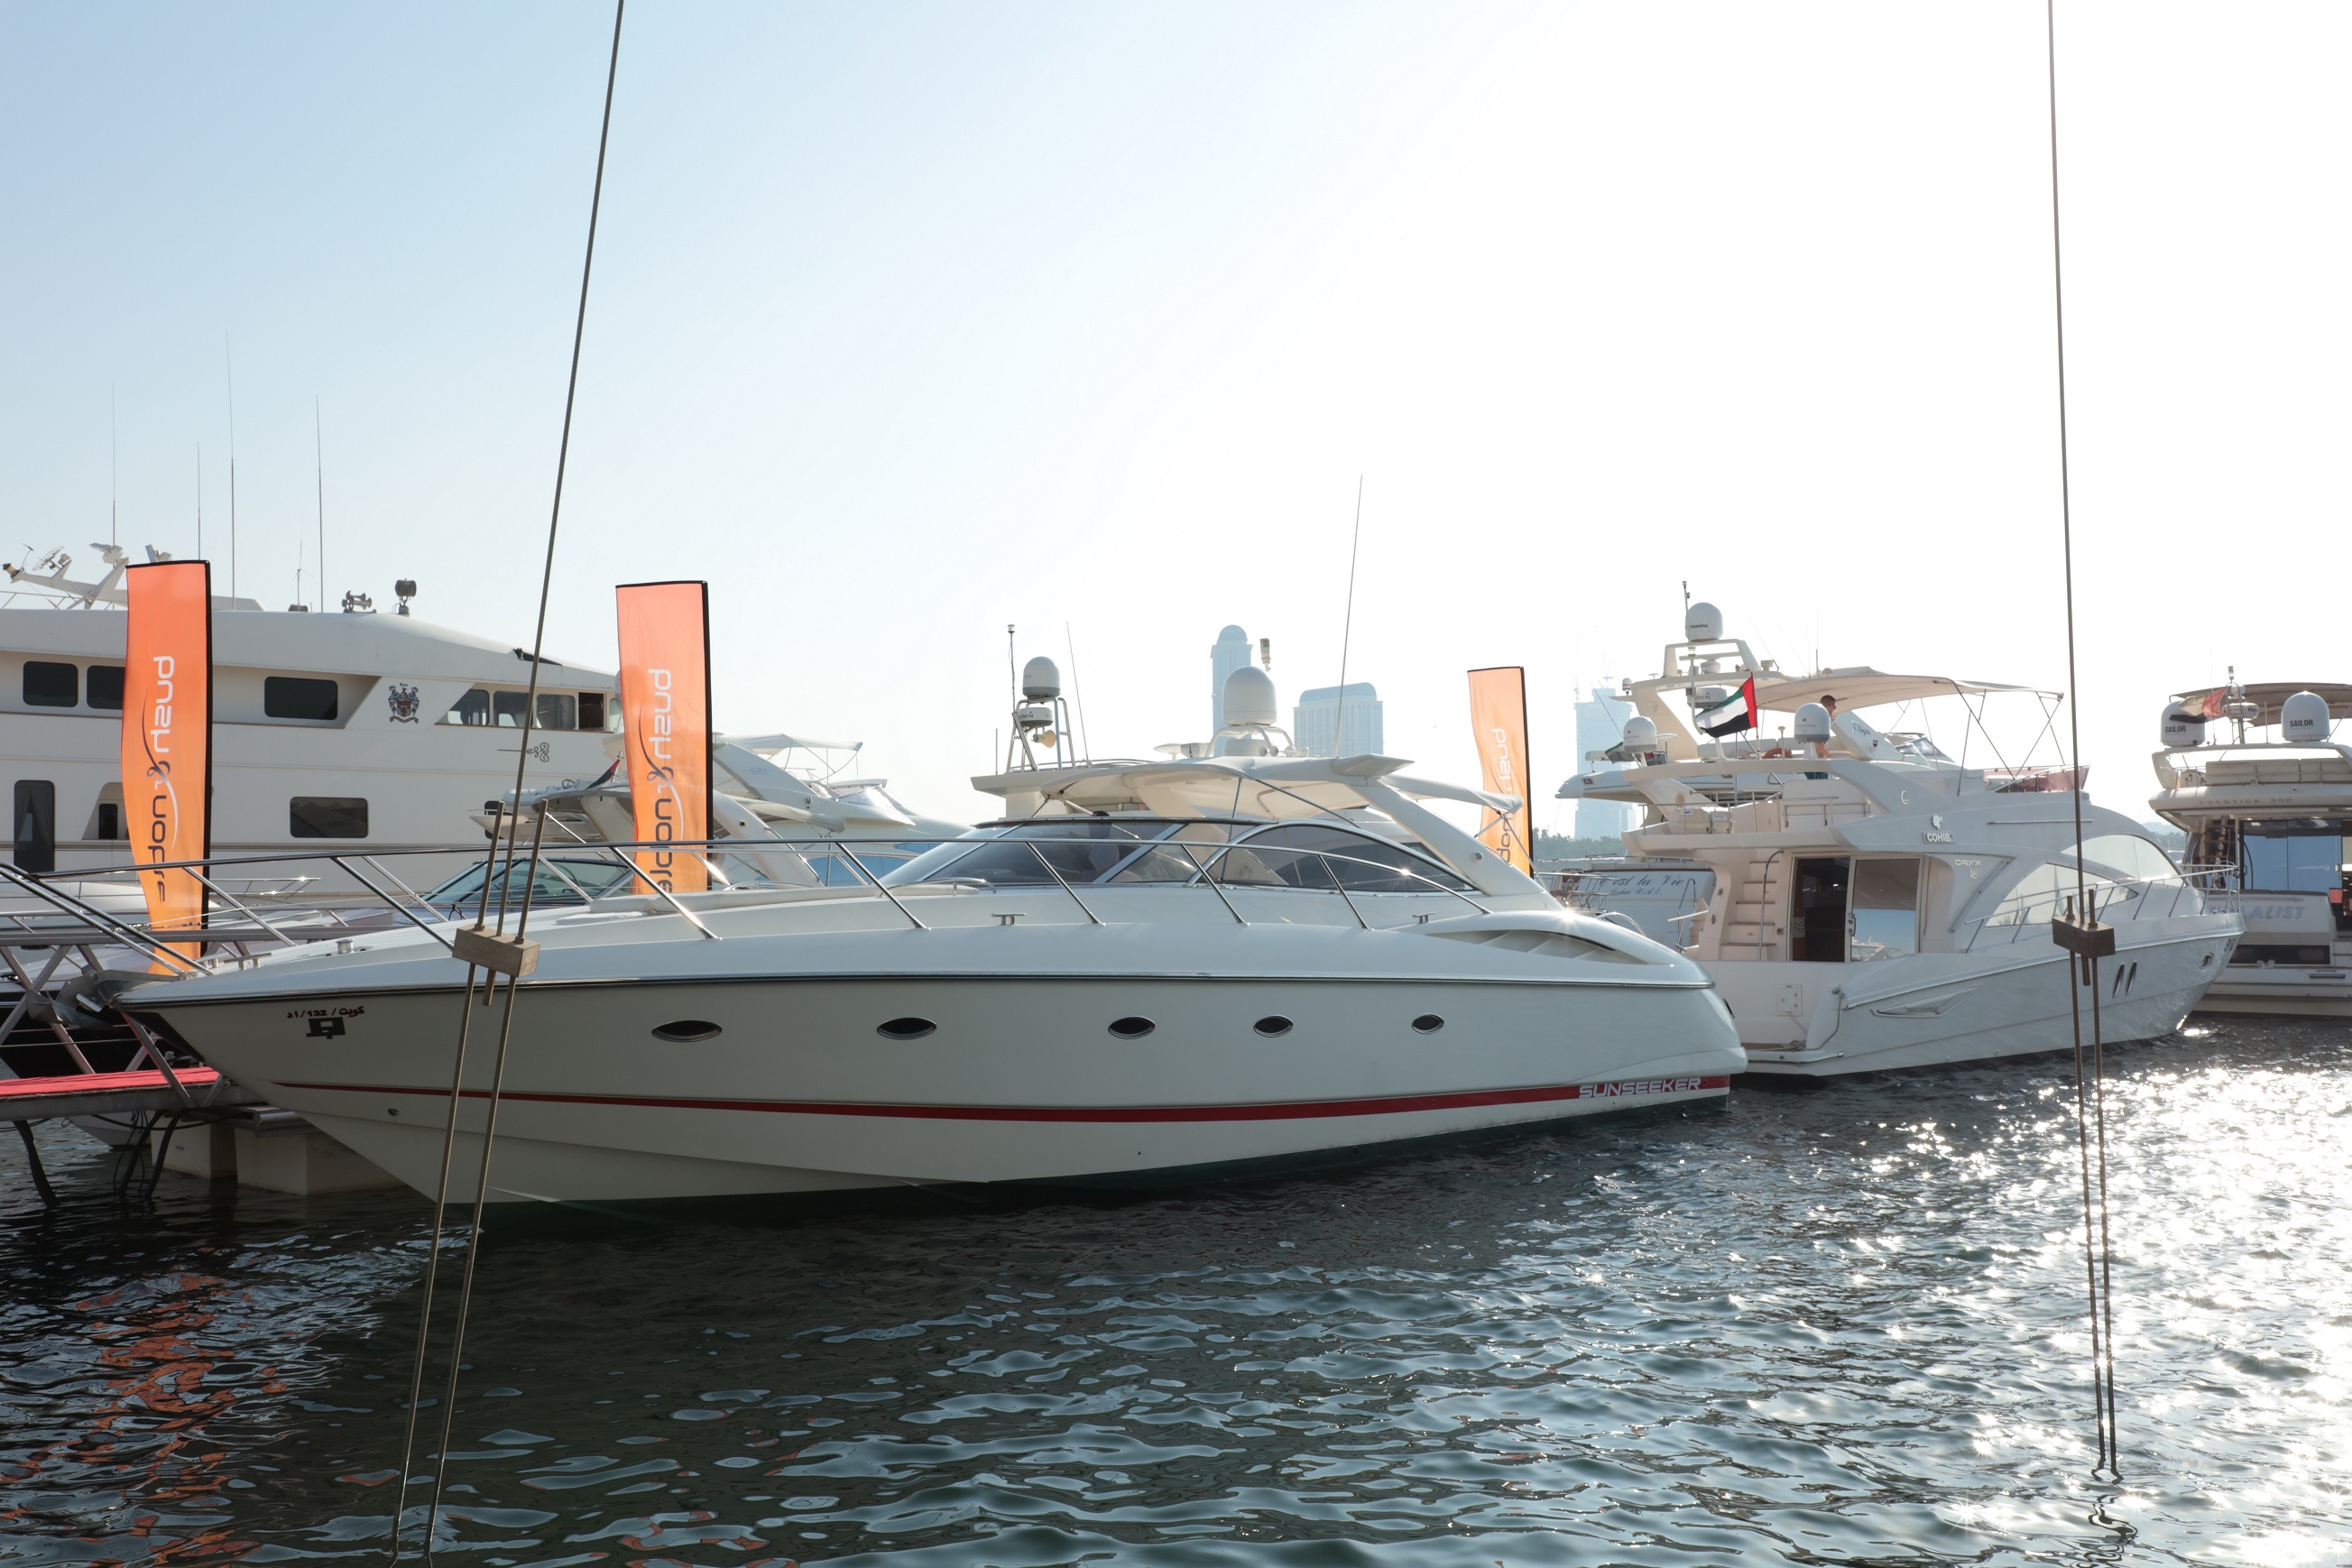 معرض دبي للقوارب واليخوت المستعملة في مرسى خور دبي